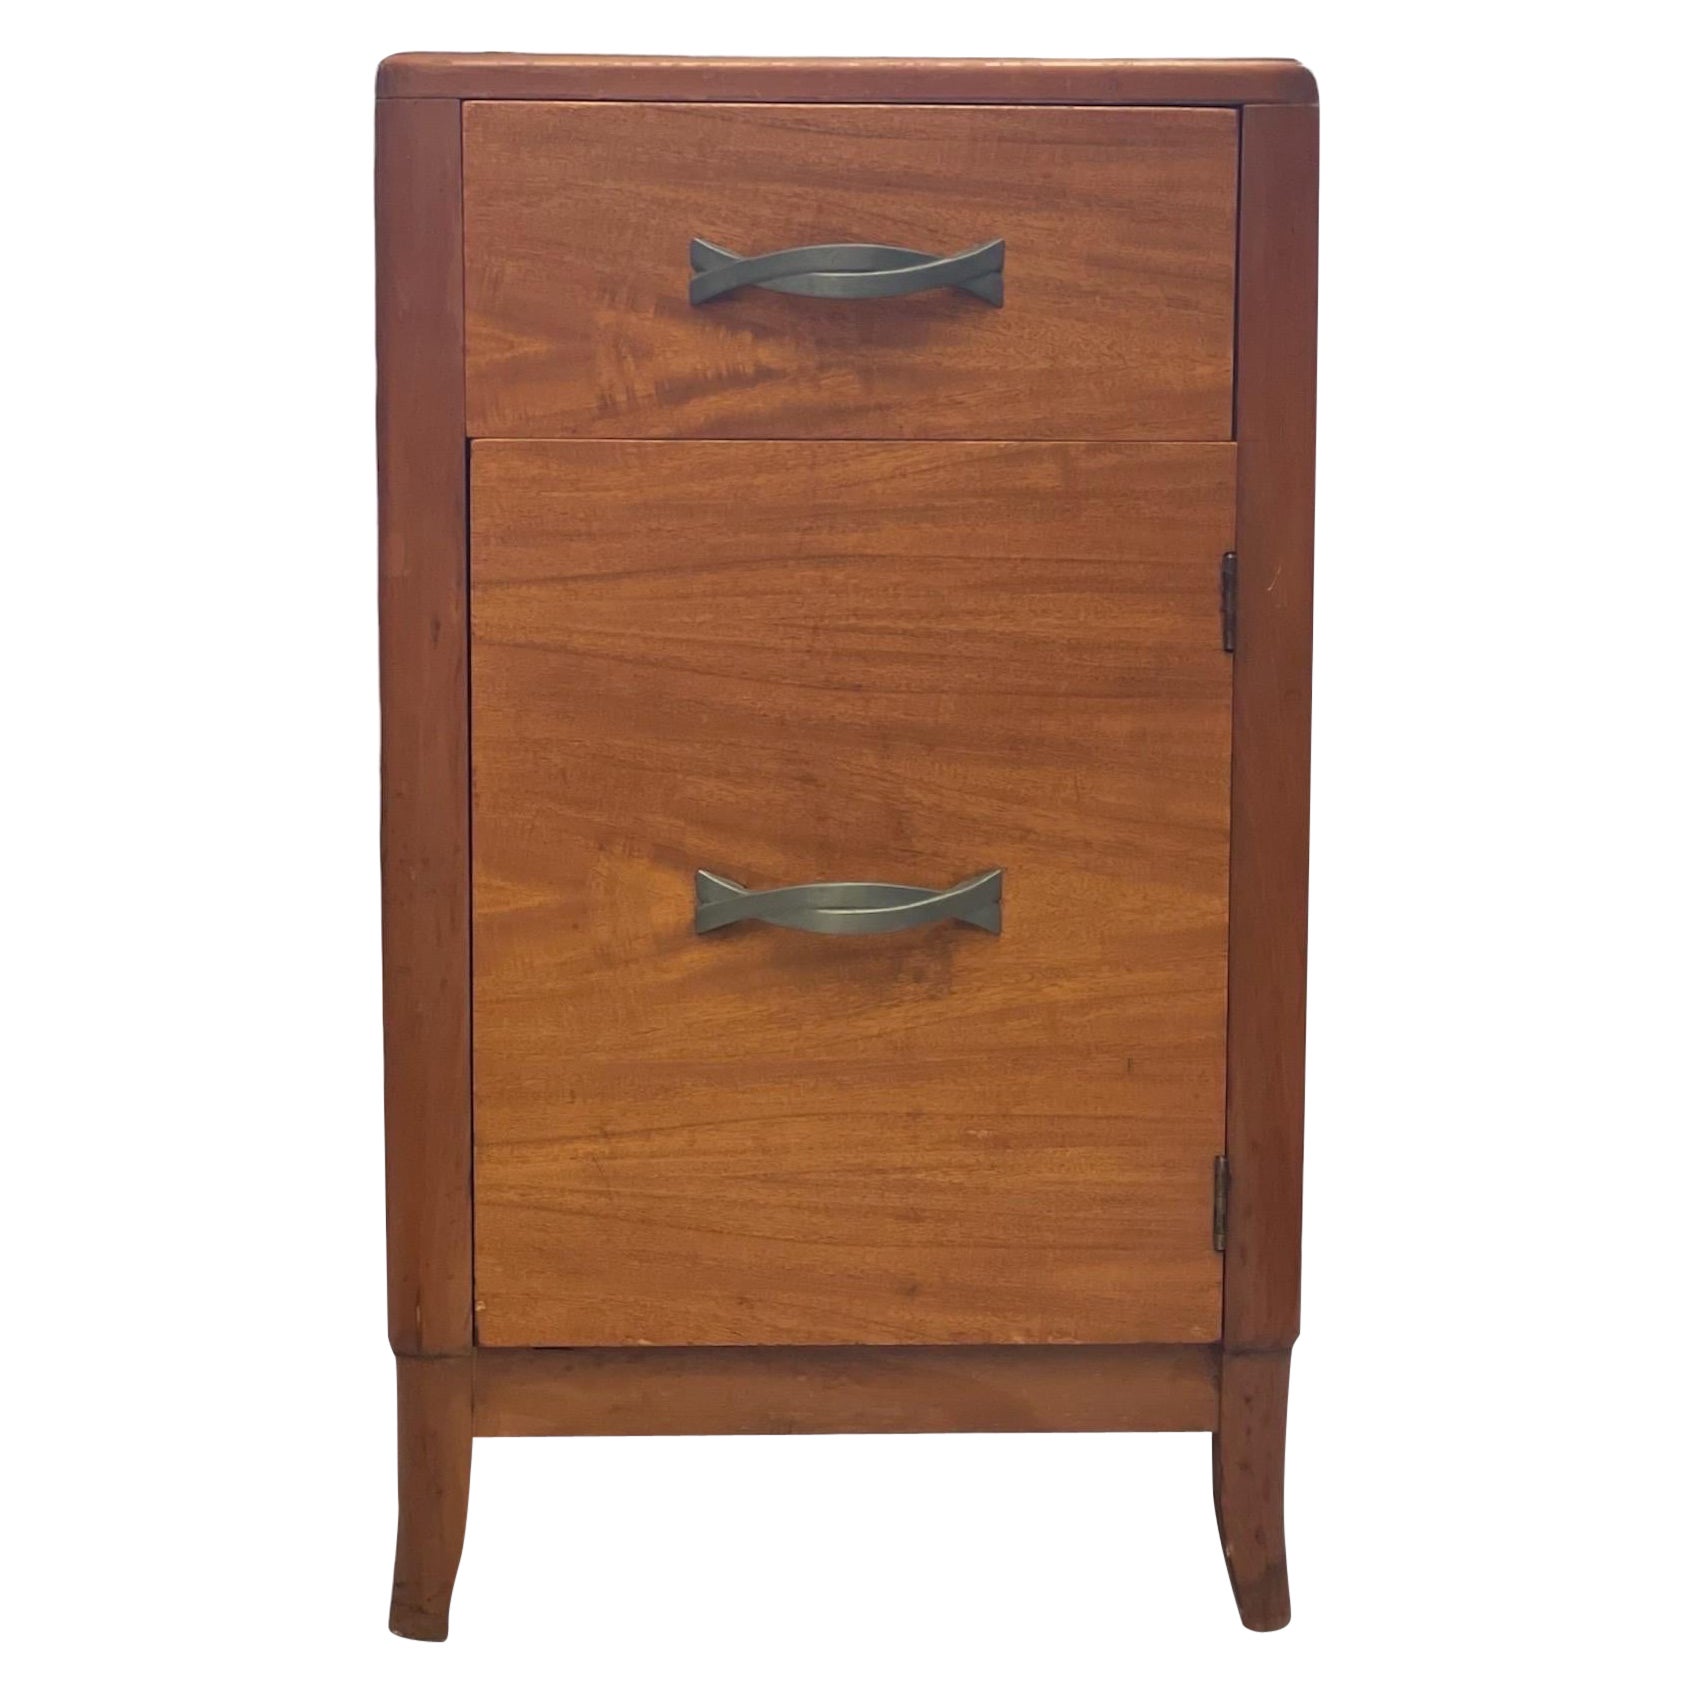 Table d'appoint vintage moderne du milieu du siècle avec tiroirs en queue d'aronde, vers les années 1950 - 1970.